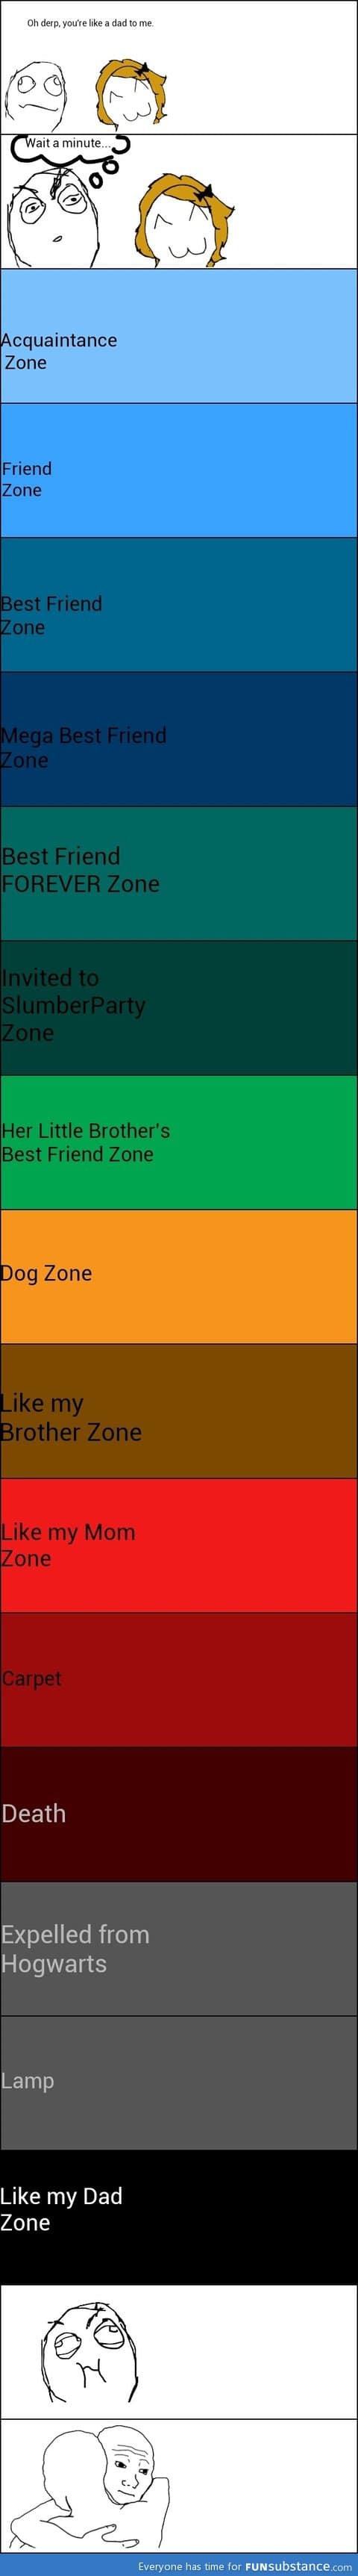 Friendzone levels guide